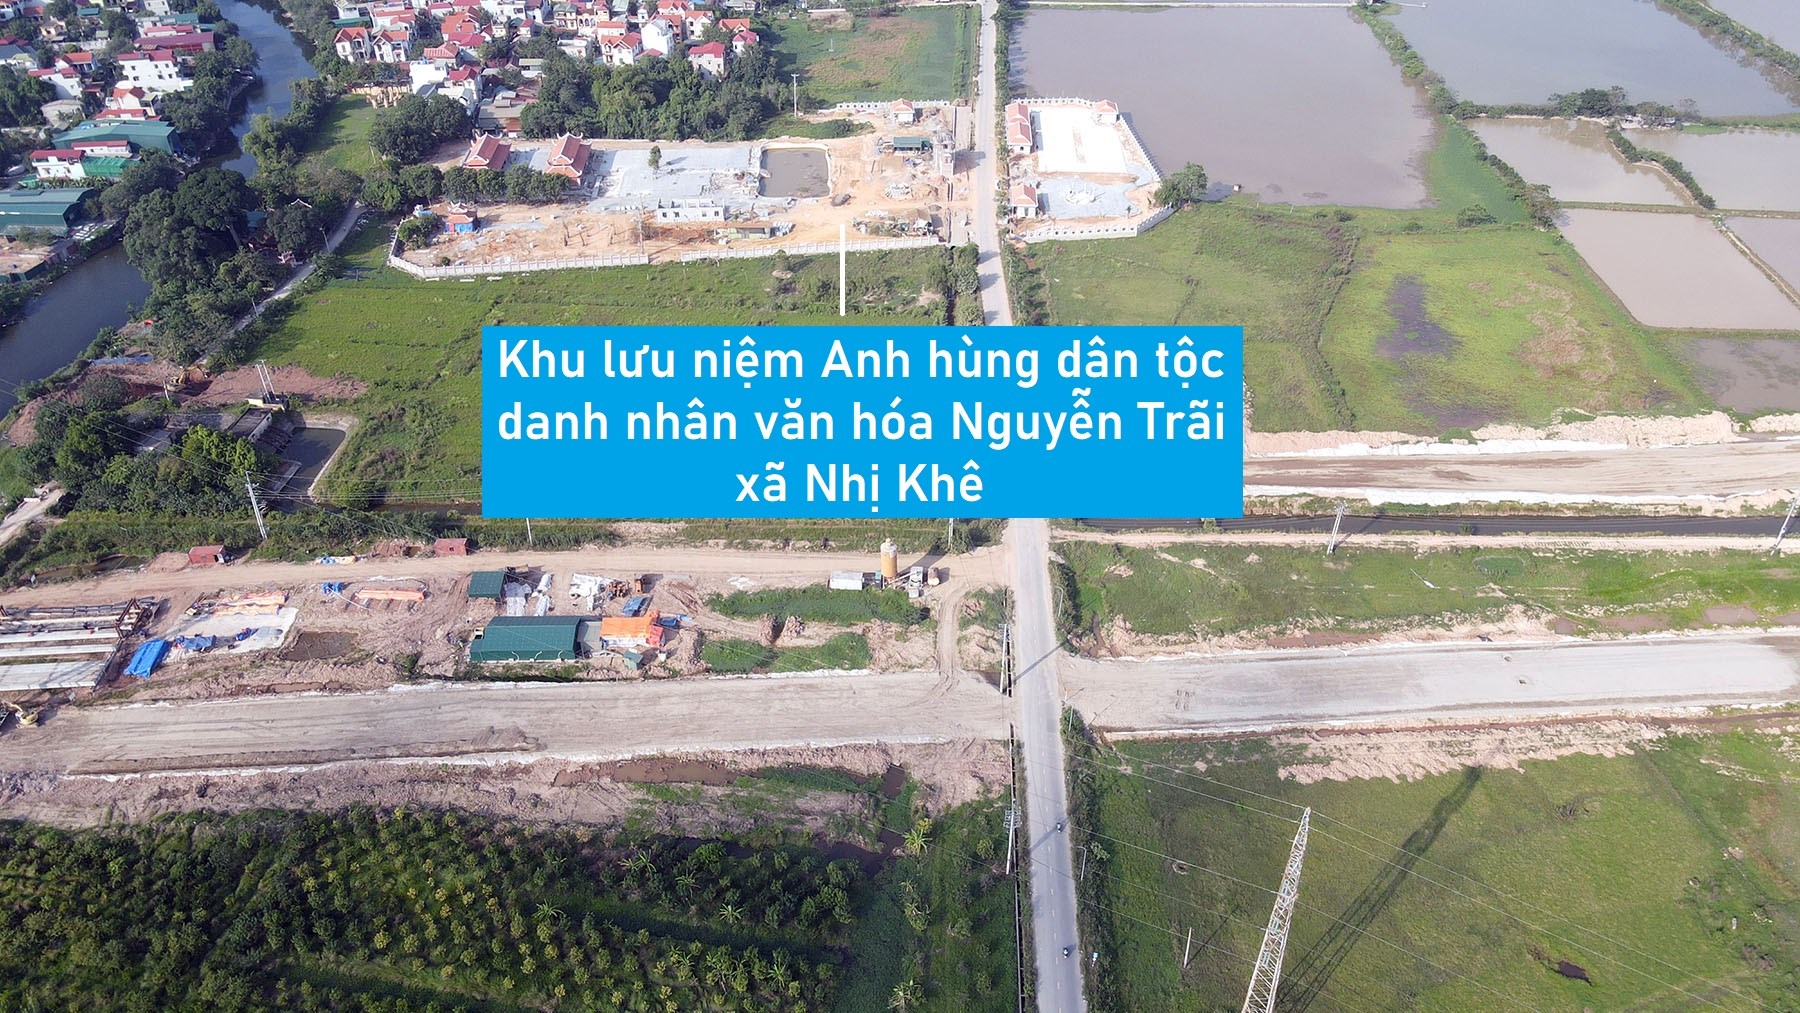 Hình ảnh vành đai 4 qua Thường Tín, Hà Nội đang xây dựng